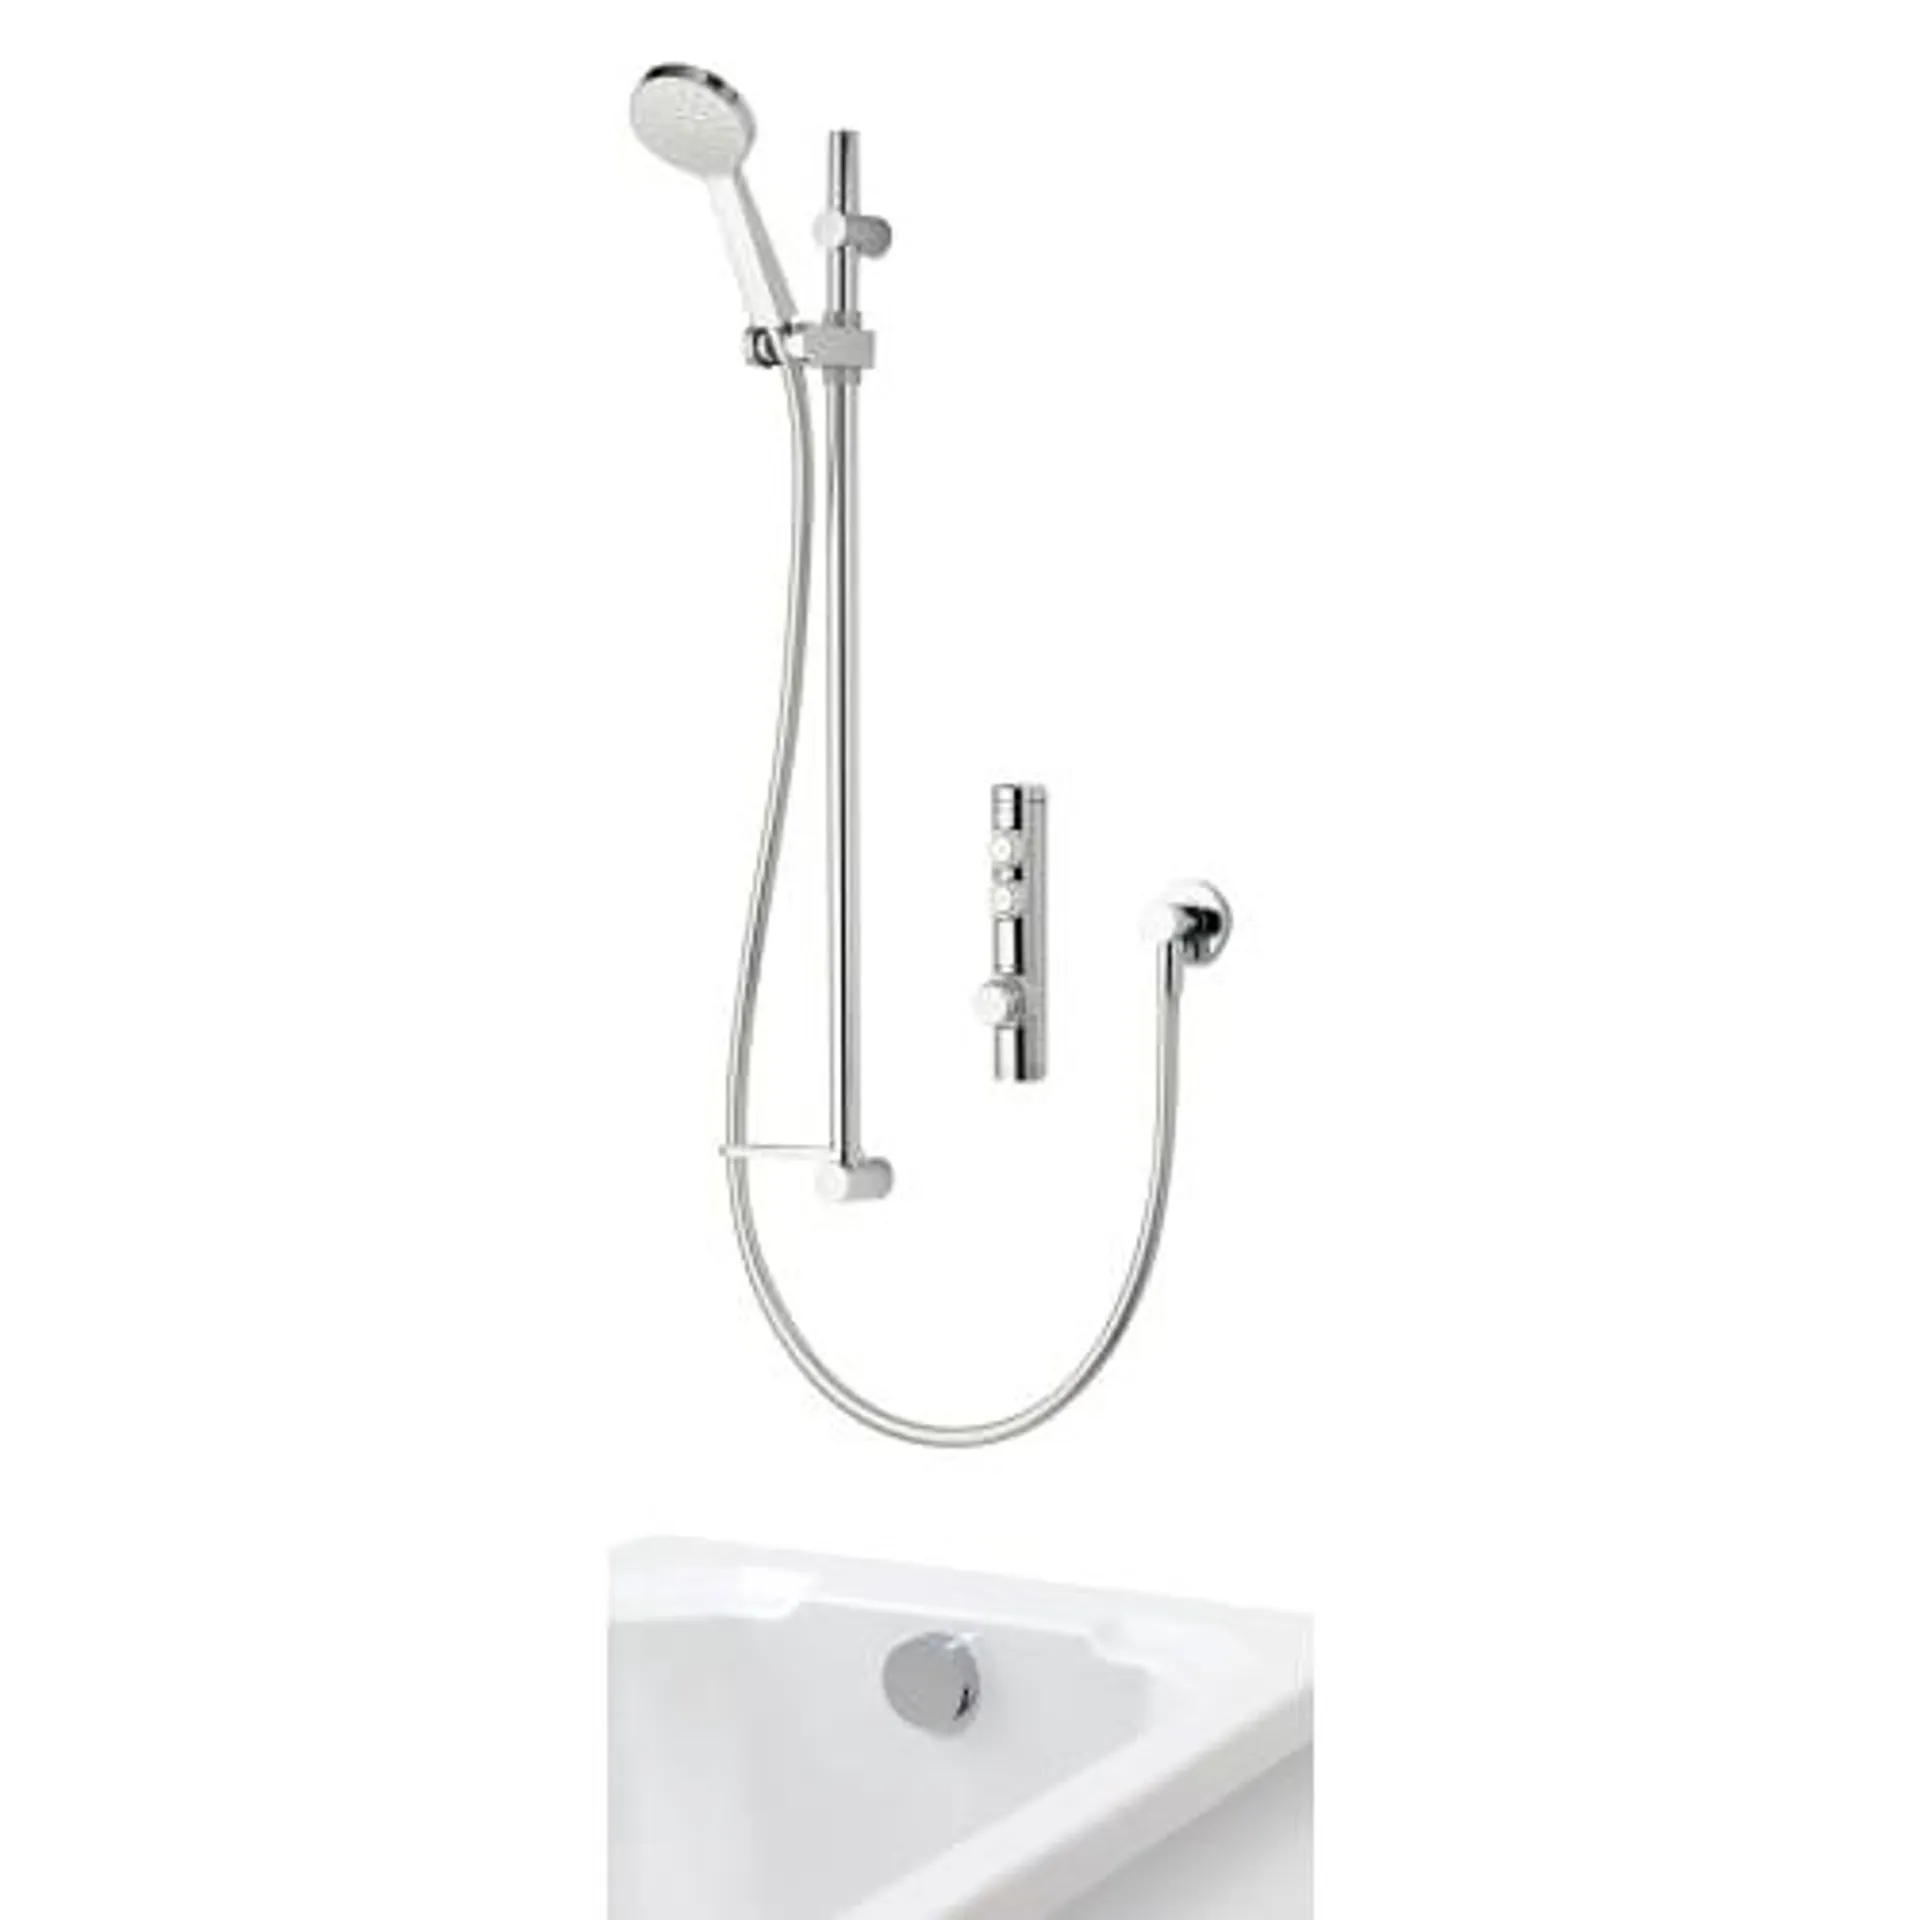 Aqualisa iSystem Gravity Pumped Dual Outlet Digital Concealed Shower with Adjustable Bath Filler